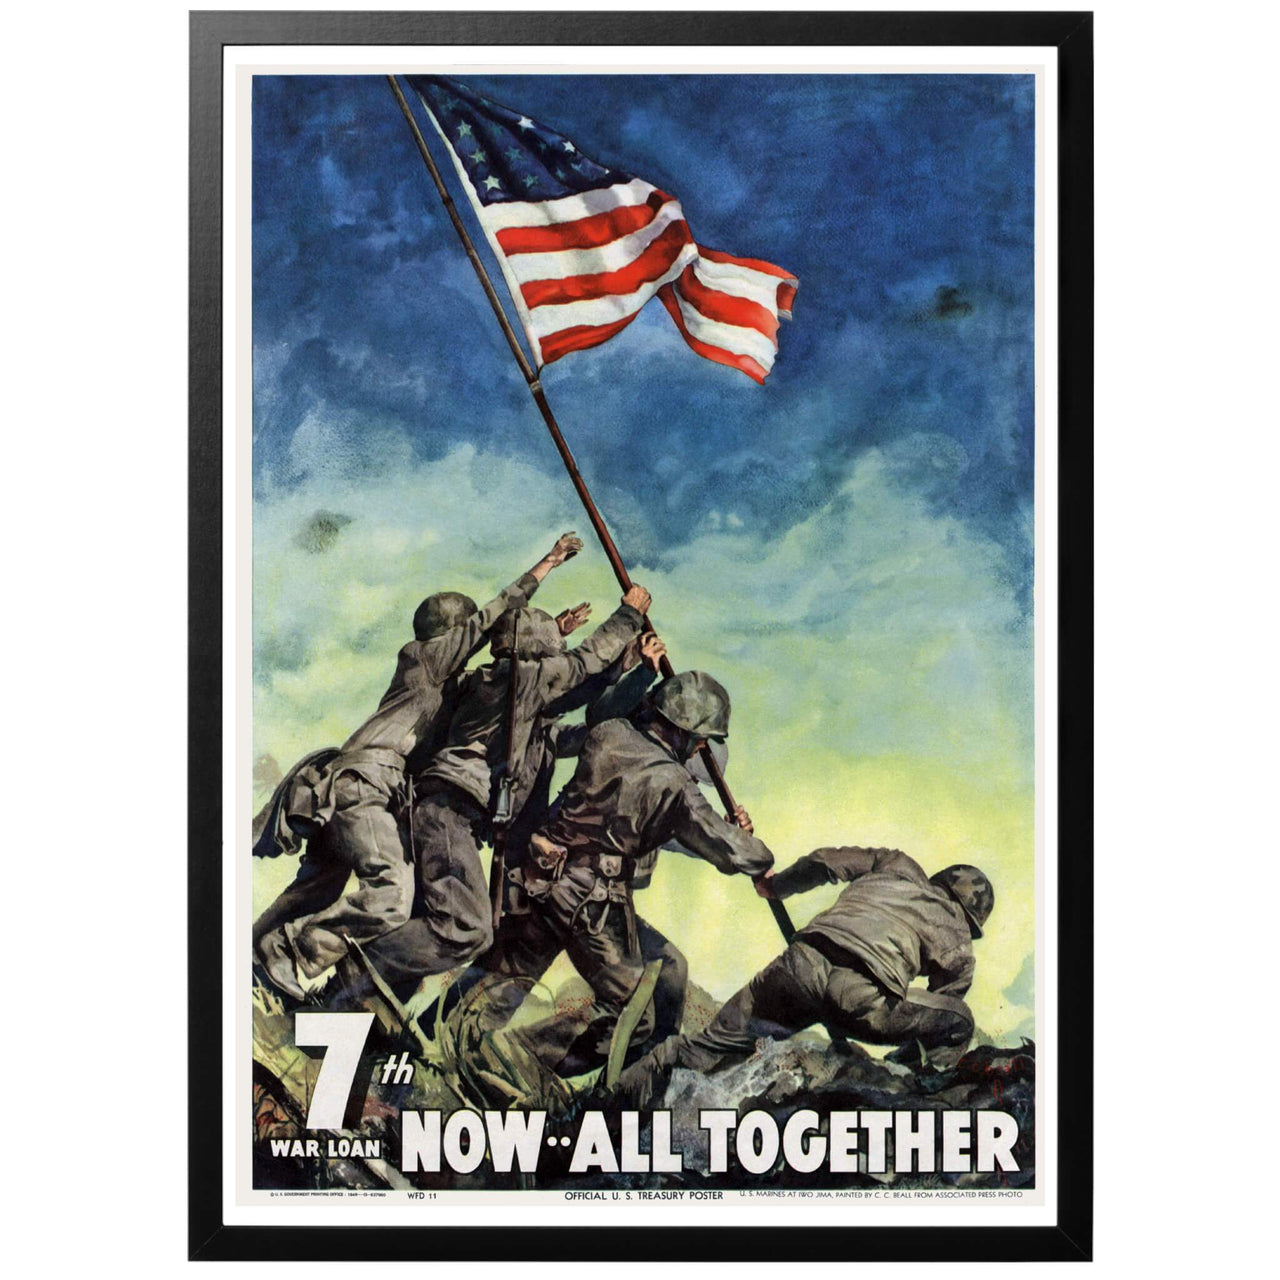 7ht war loan - Amerikansk andra världskriget propagandaposter föreställande solder resande USA:s flagga på Iwo Jima